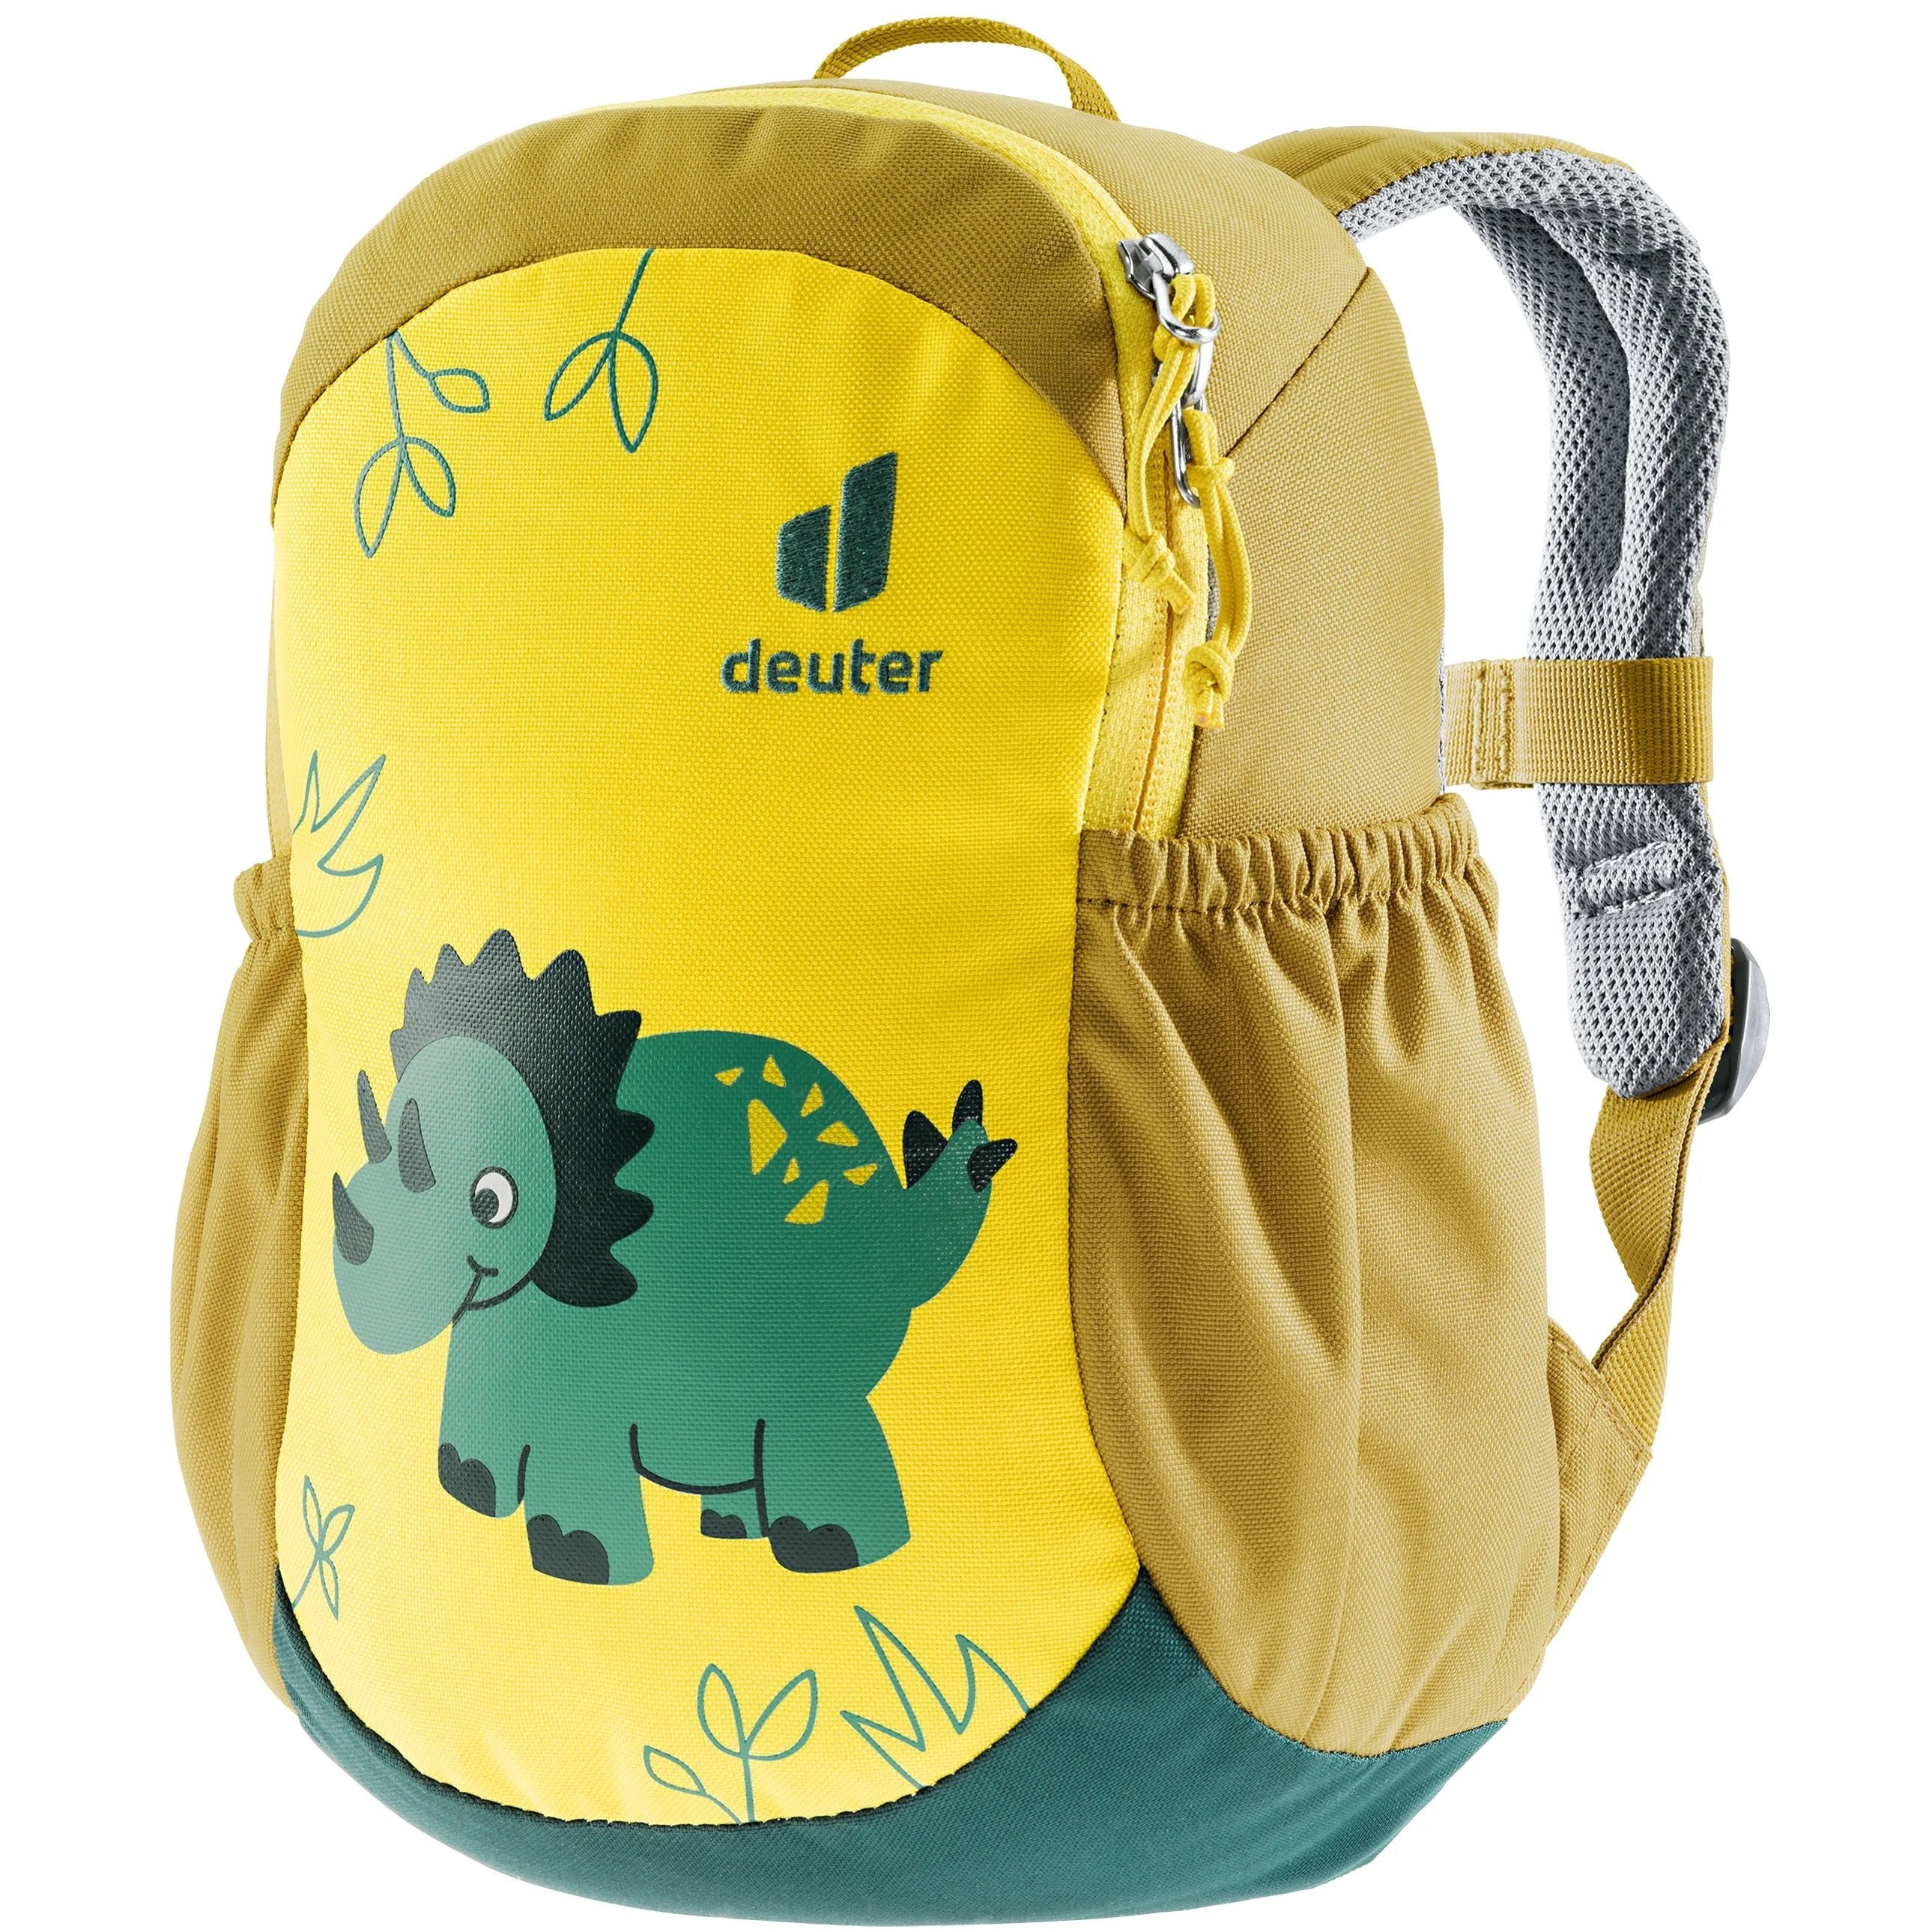 Deuter Daypack Family Pico children's backpack 28 cm - corn-turmeric